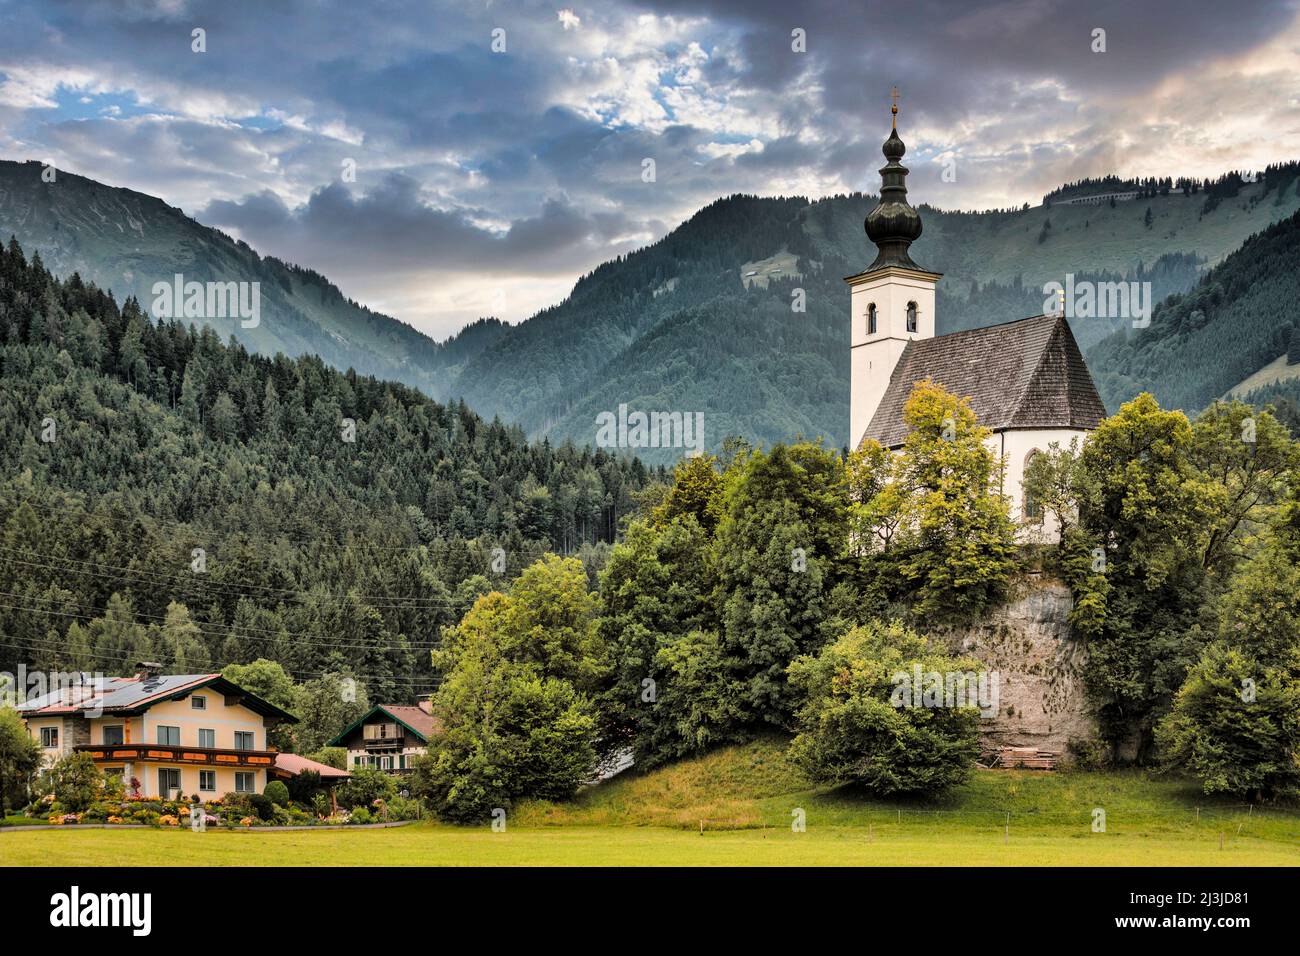 Austria, Salisburgo, quartiere di Hallein, Golling an der Salzach - chiesa di pellegrinaggio di San Nicola Foto Stock